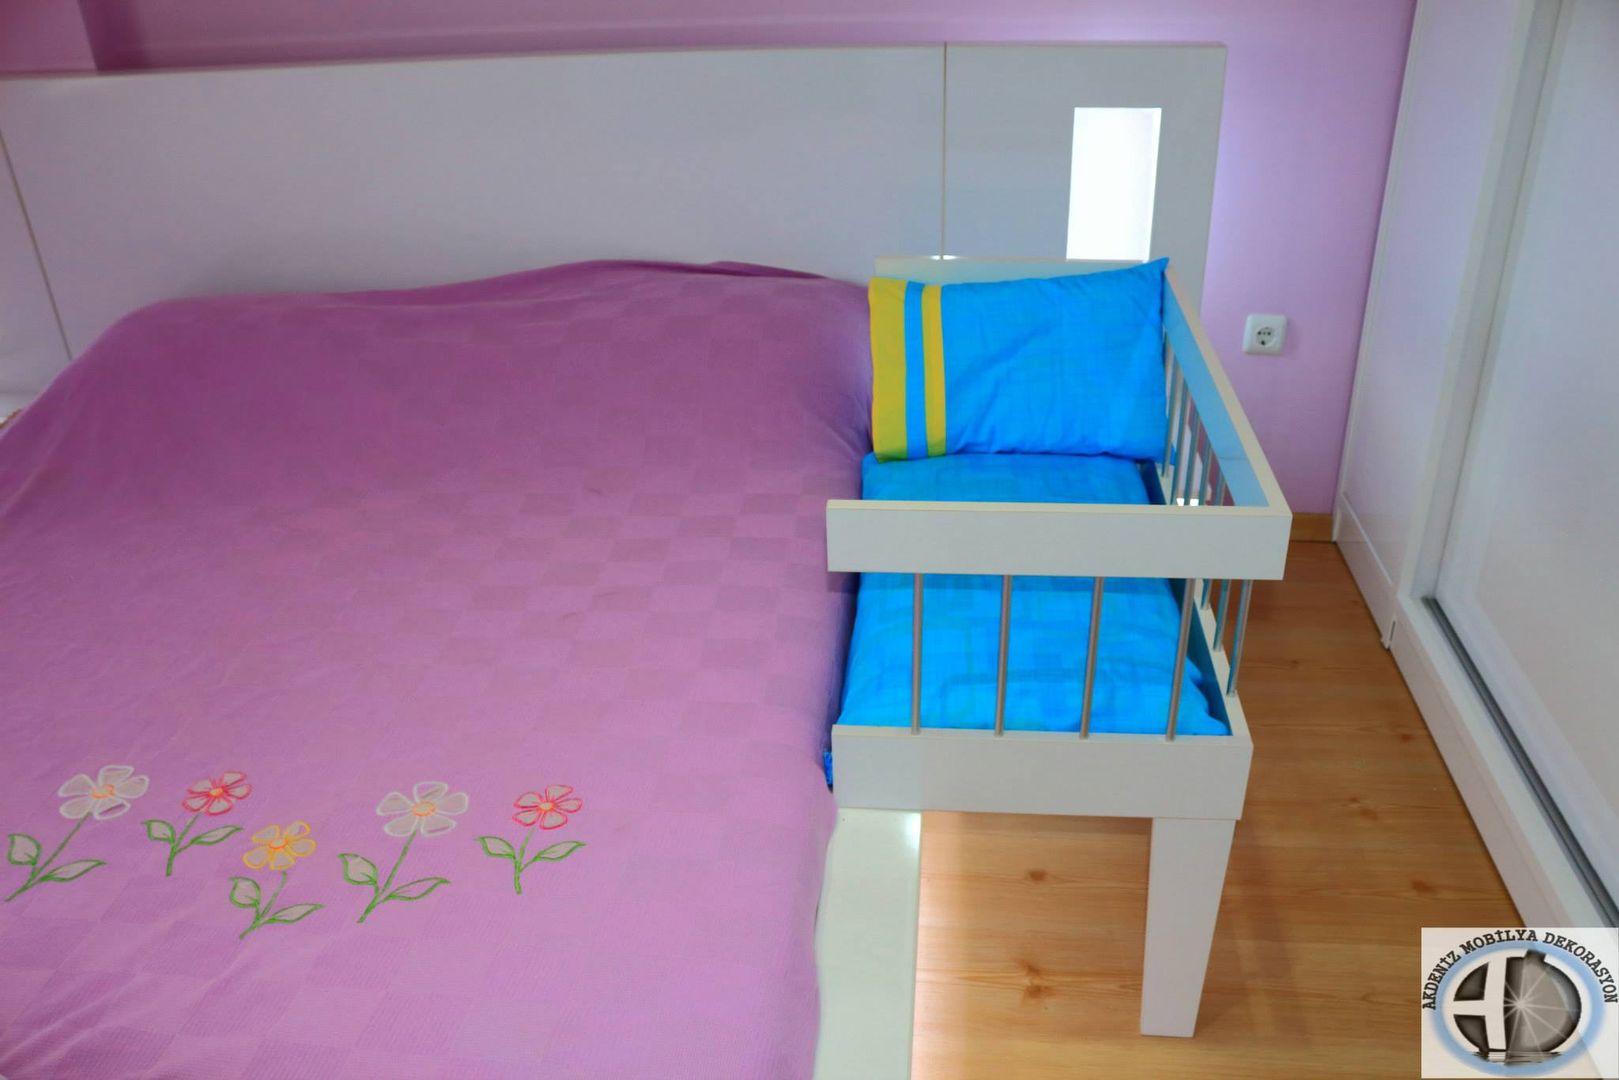 Anne Yanı Beşiği, Akdeniz Dekorasyon Akdeniz Dekorasyon Modern Çocuk Odası Yatak & Beşikler